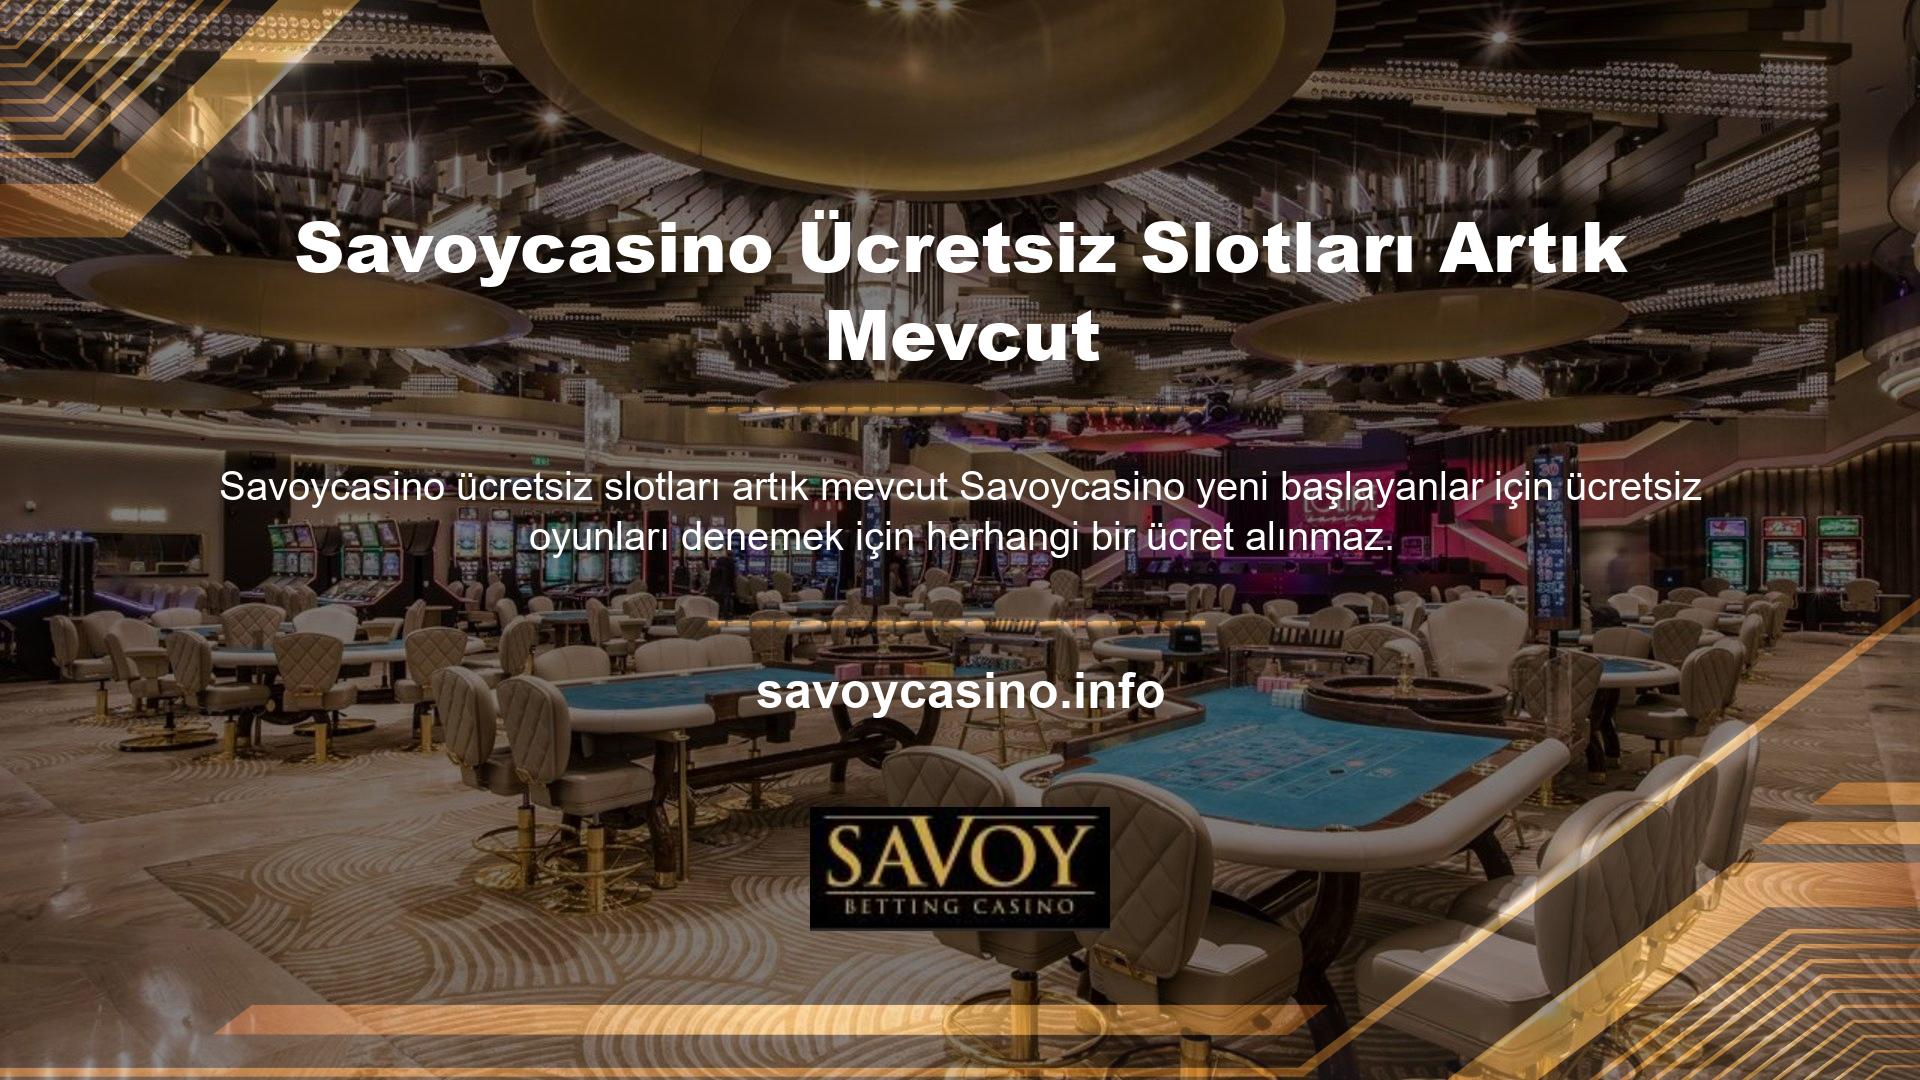 Savoycasino ücretsiz slotlarının bu sürümü, risksiz bir oyun deneyimi sunduğu için denemeye değer